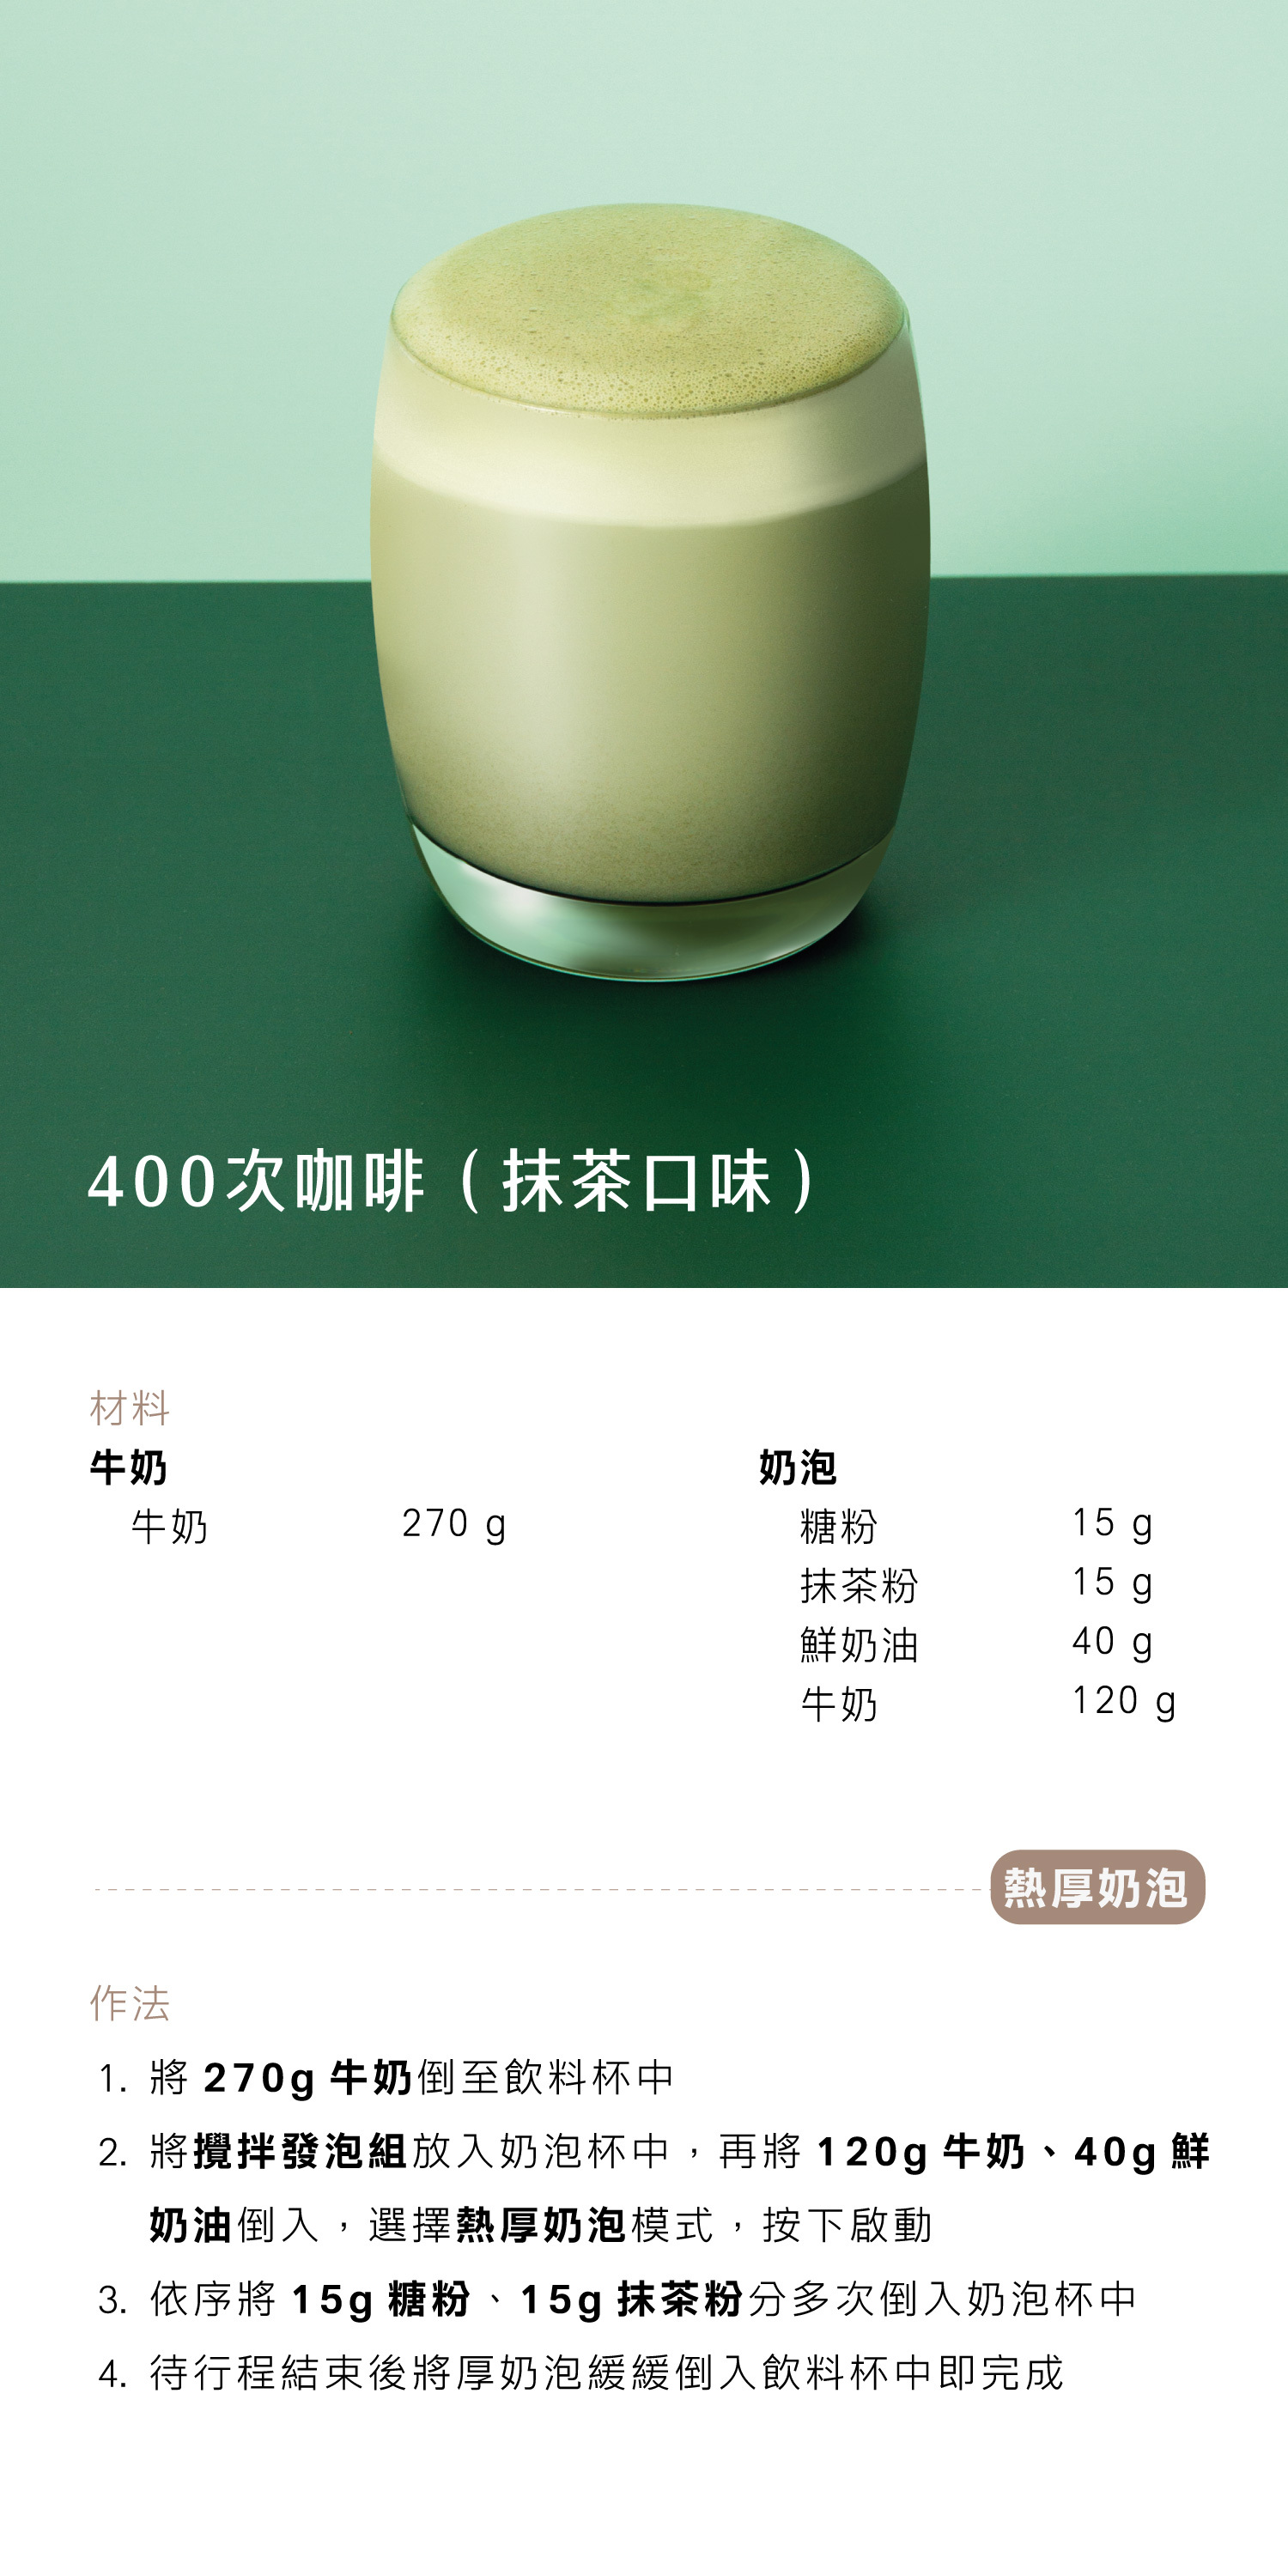 400次咖啡抹茶口味 - AIWA 奶泡攪拌機 AMF-500 Recipe 食譜 飲料教學